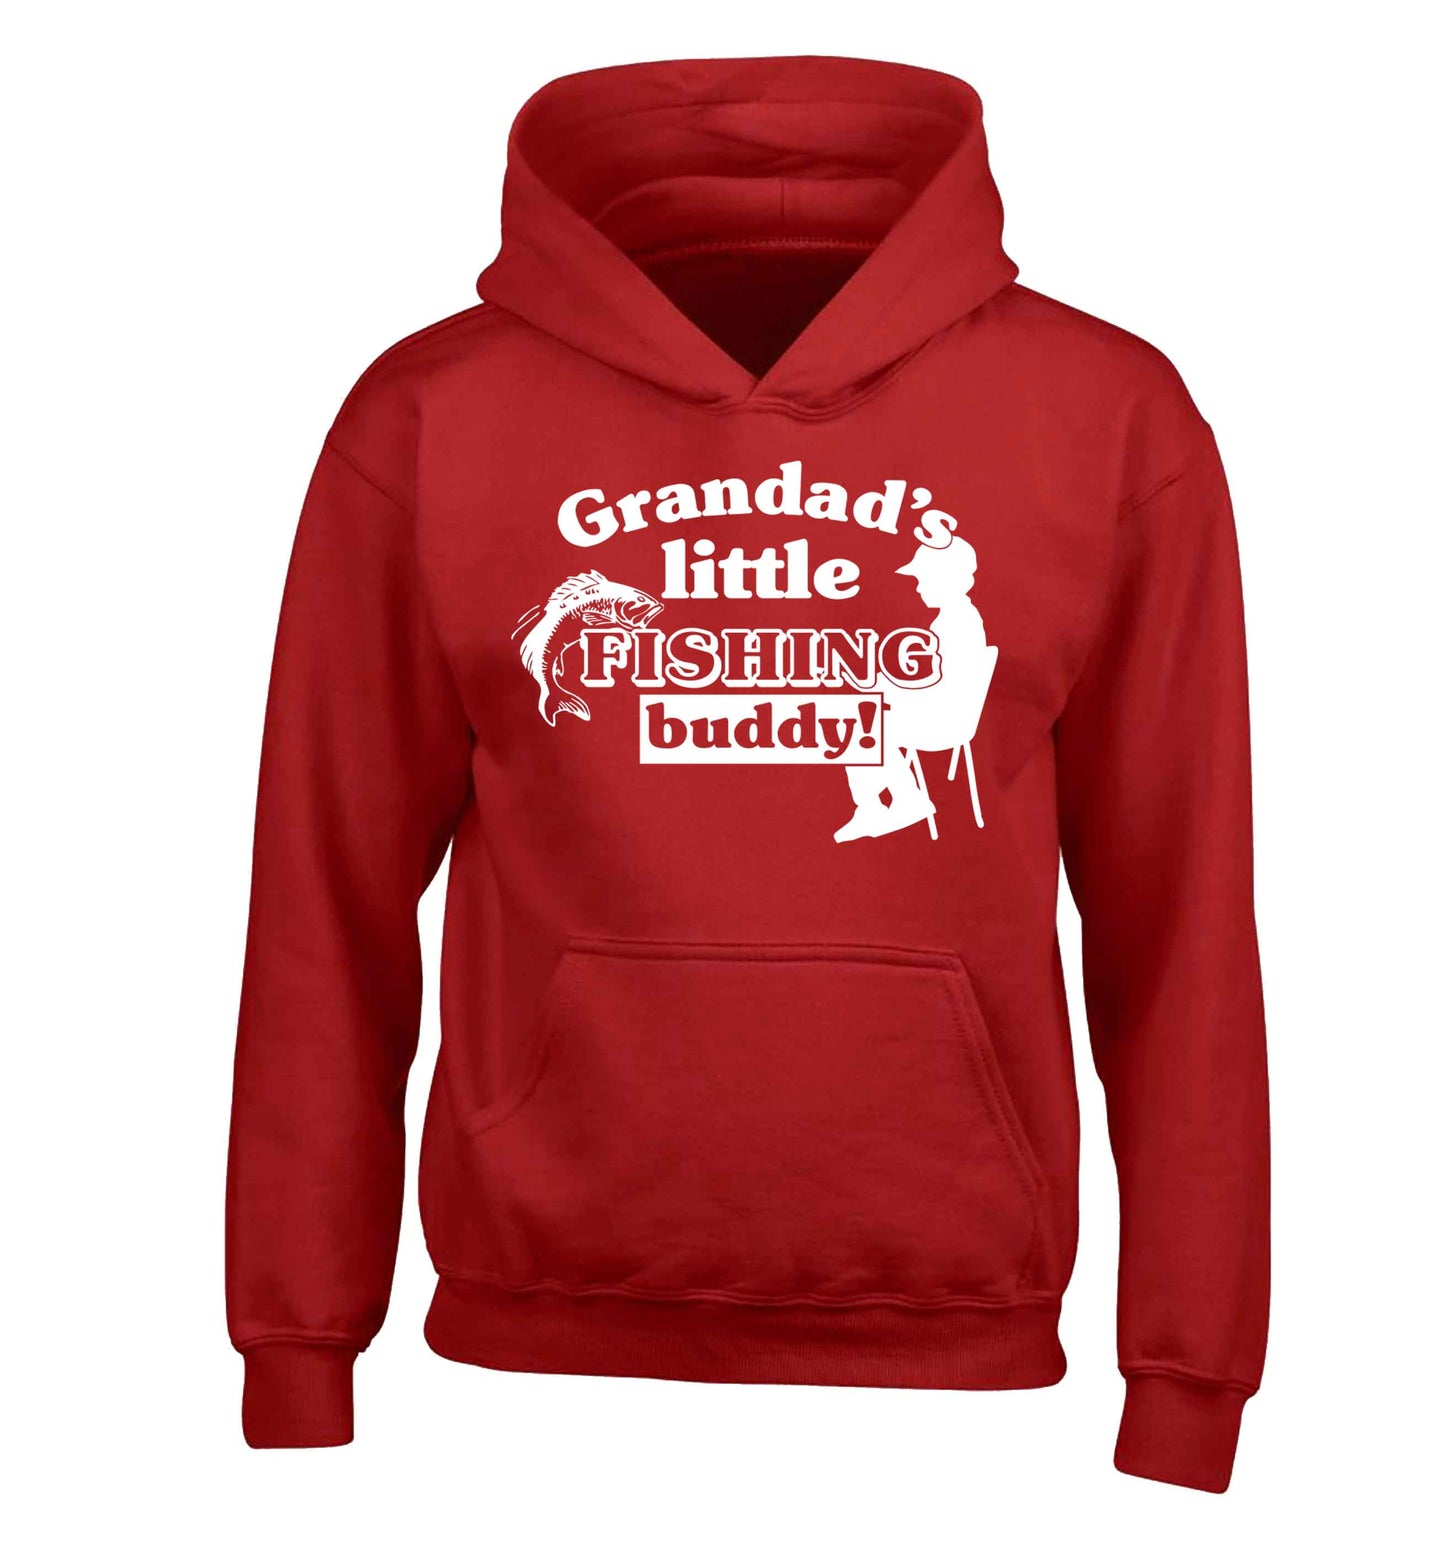 Grandad's little fishing buddy! children's red hoodie 12-13 Years